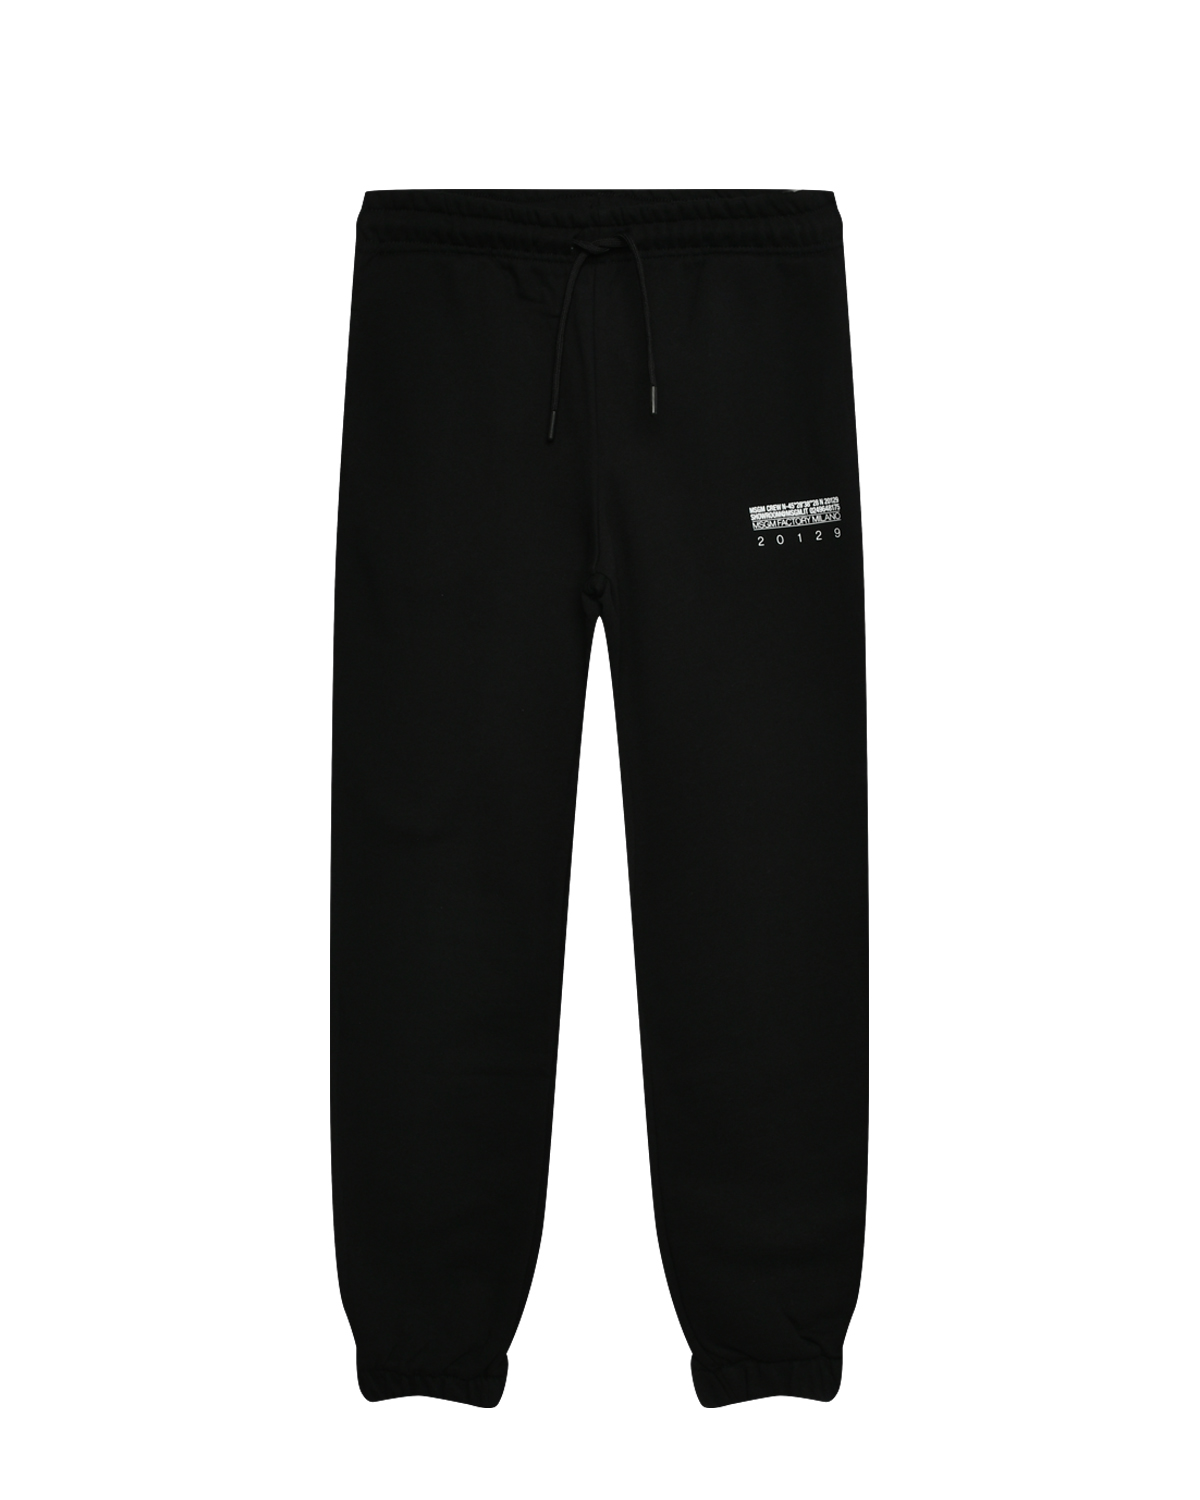 Спортивные брюки с поясом на резинке MSGM, размер 152, цвет черный